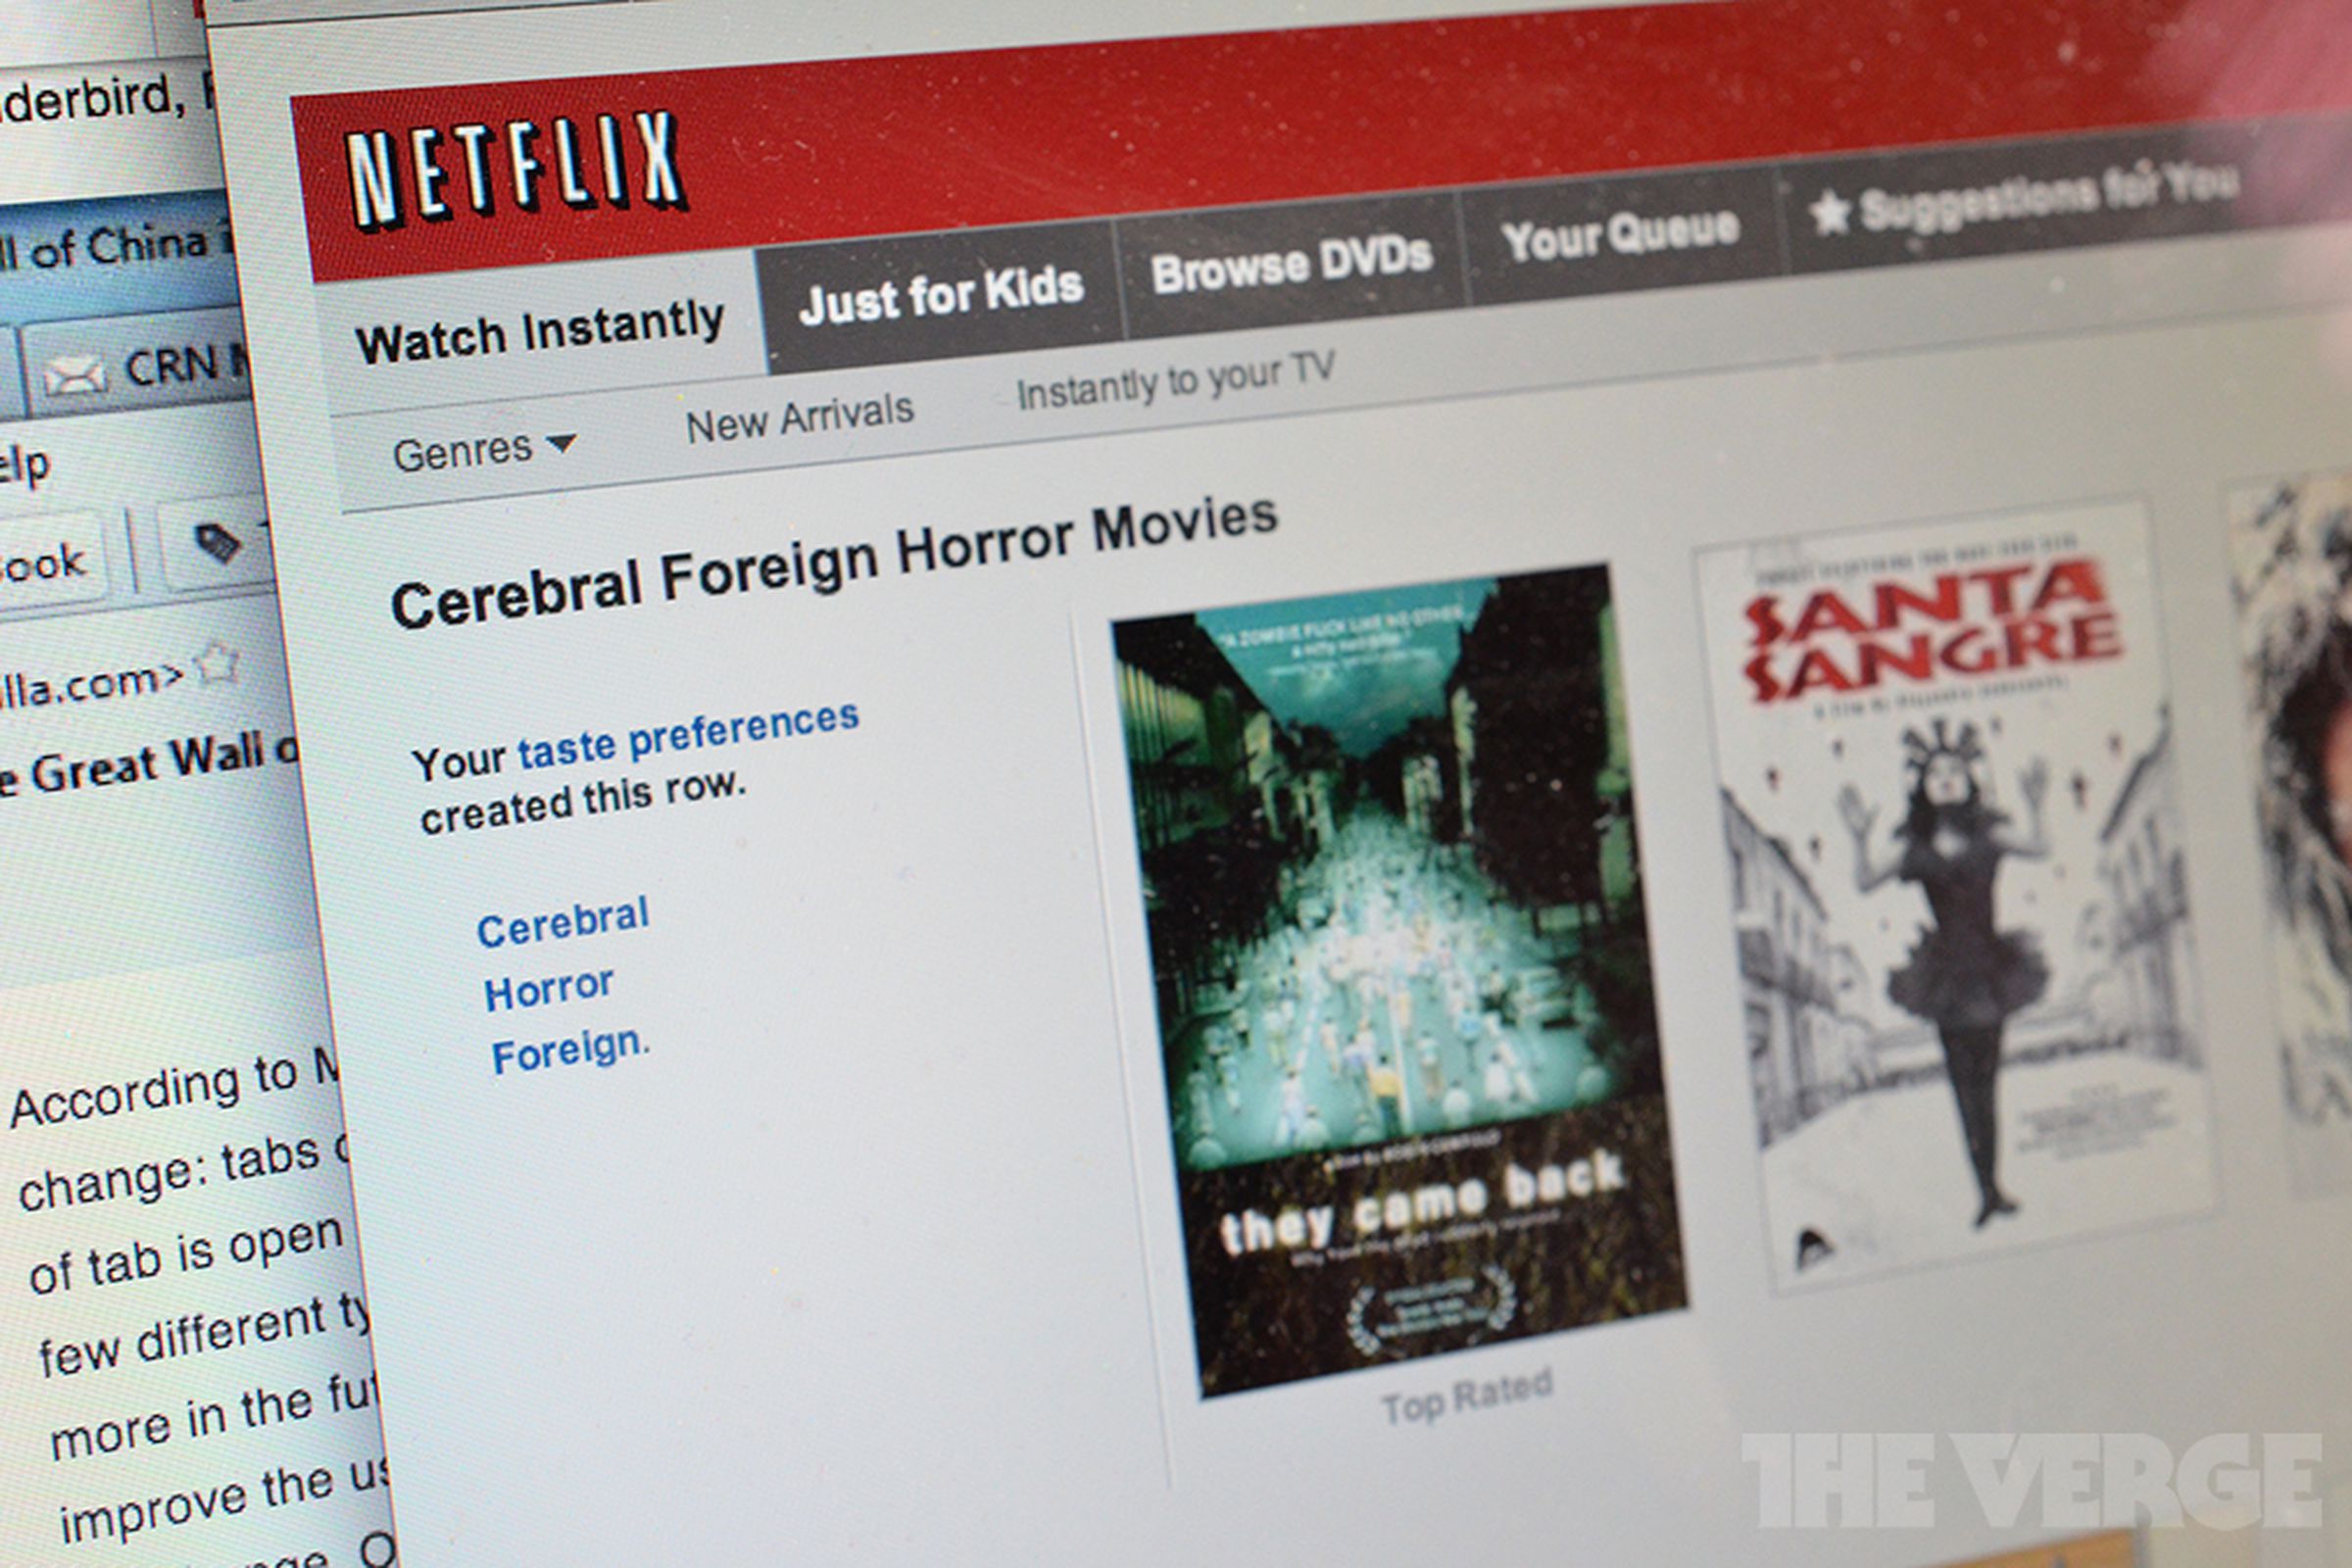 Netflix genre recommendation